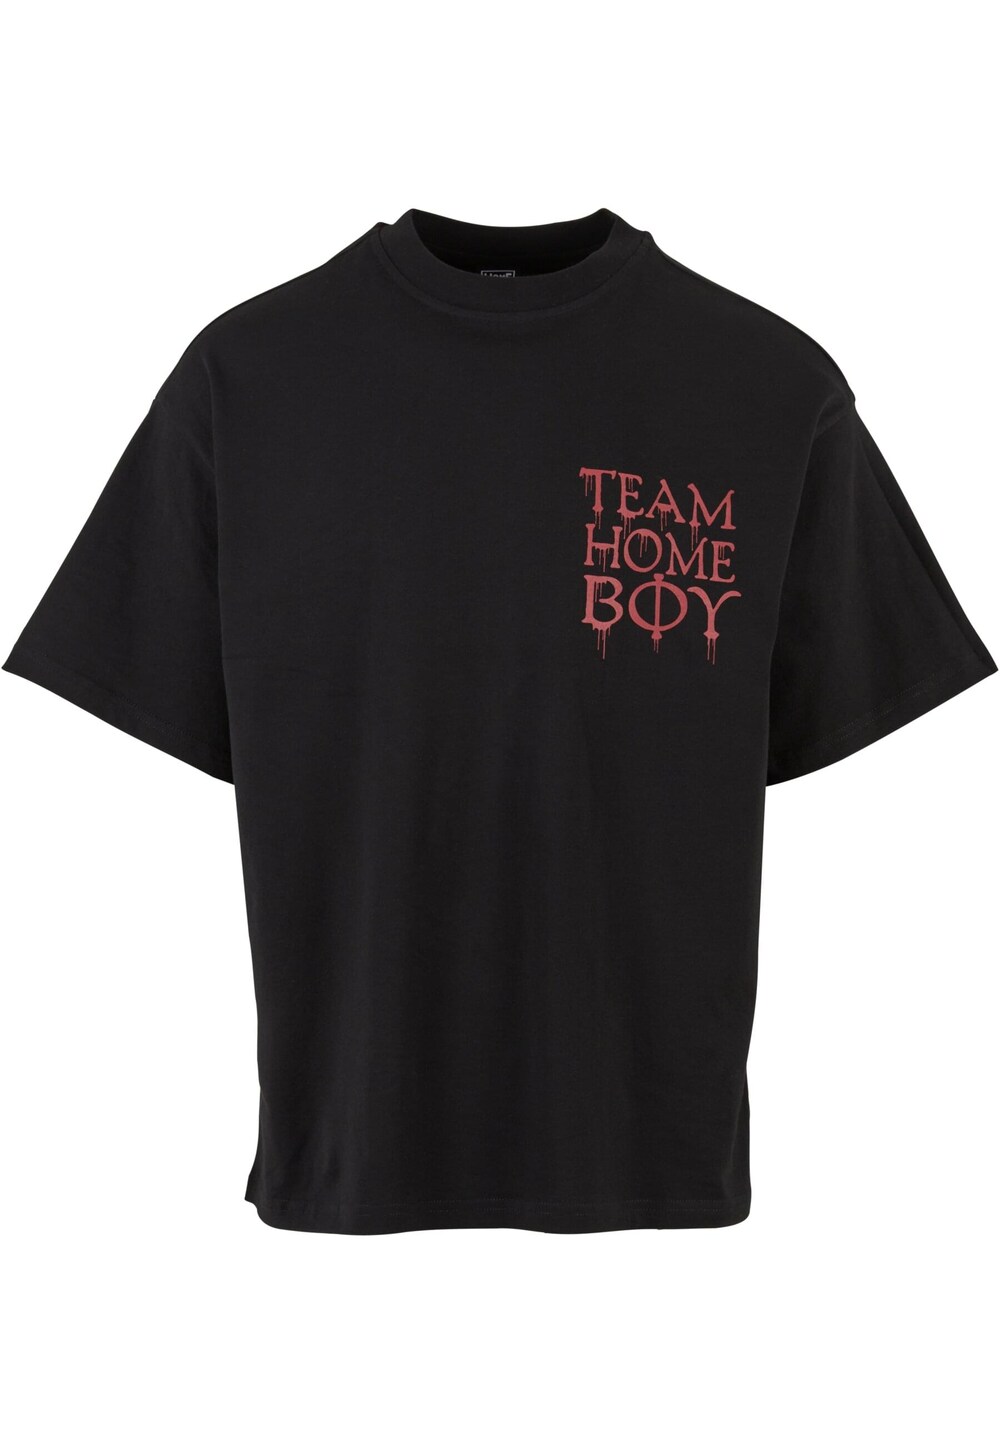 Футболка Homeboy Team, черный мужская футболка dime homeboy бежевый размер m